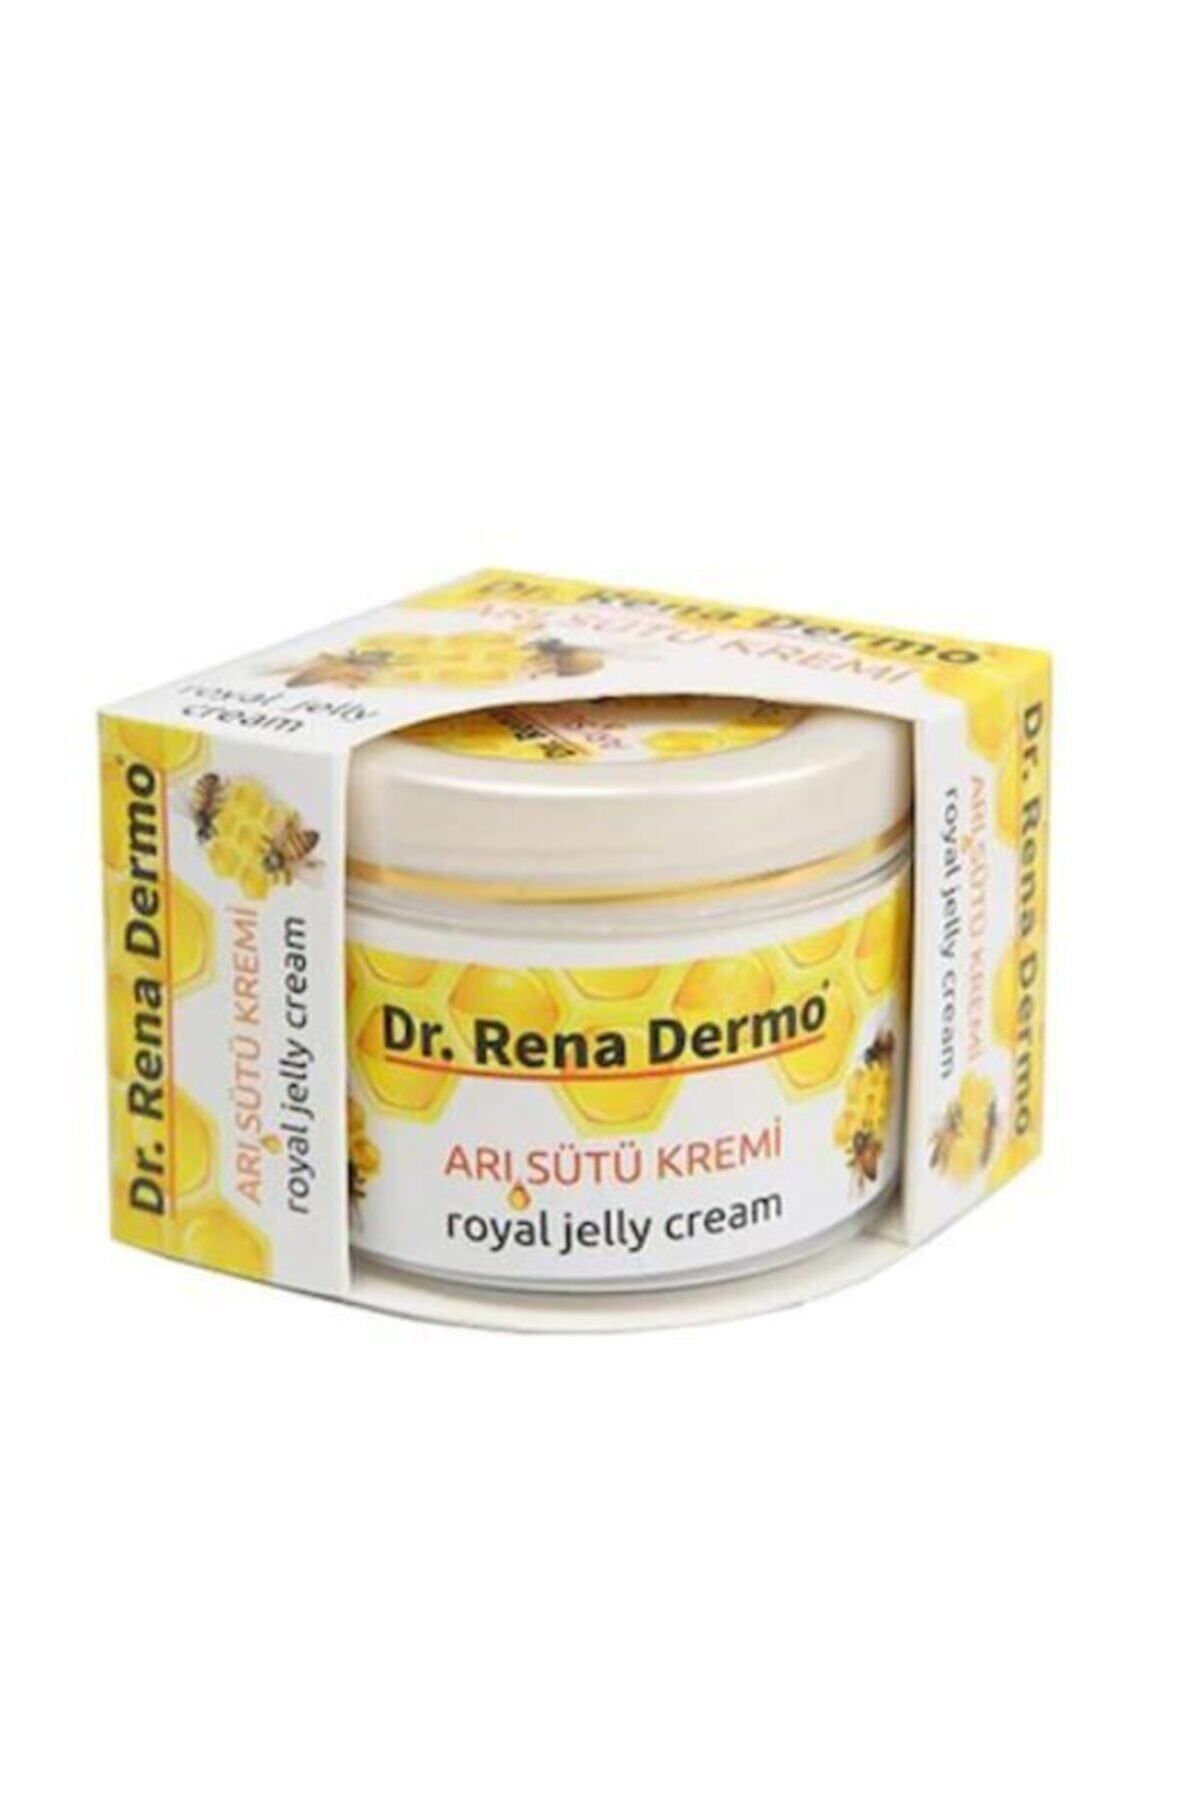 Dr. Rena Dermo Arı Sütü Kremi 100 ml